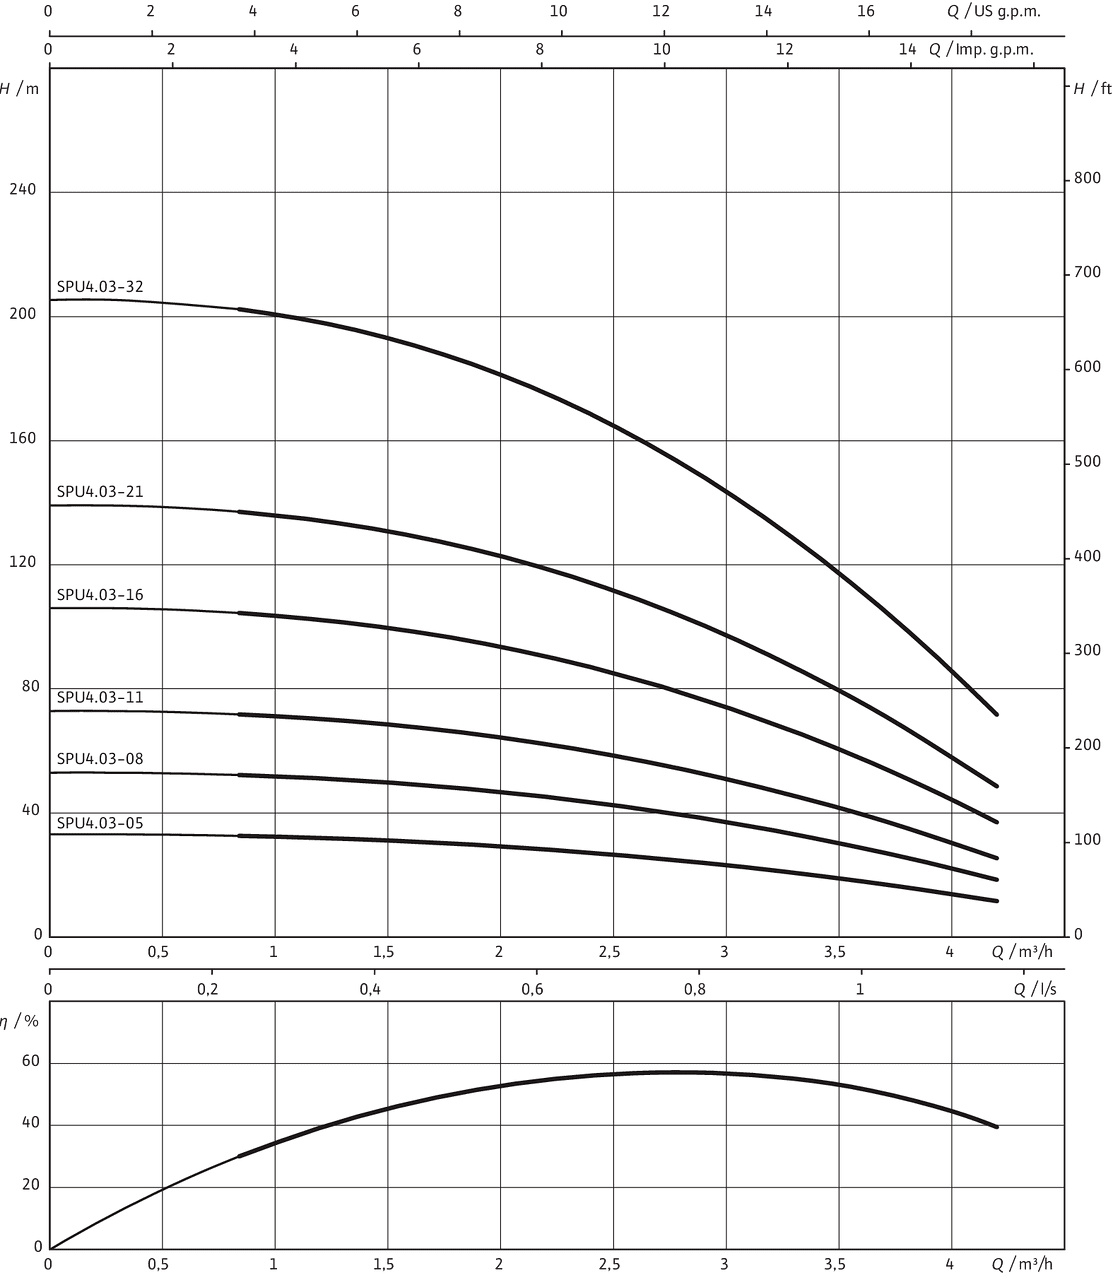 A 1 b 11 a 4. Model 3...05.400 Wilo. Подбор насосов Wilo по производительности и напору. Скважинный насос Wilo SPU4.02-10-B/xi4. Скважинный насос Wilo SPU4.04-09-B/xi4.